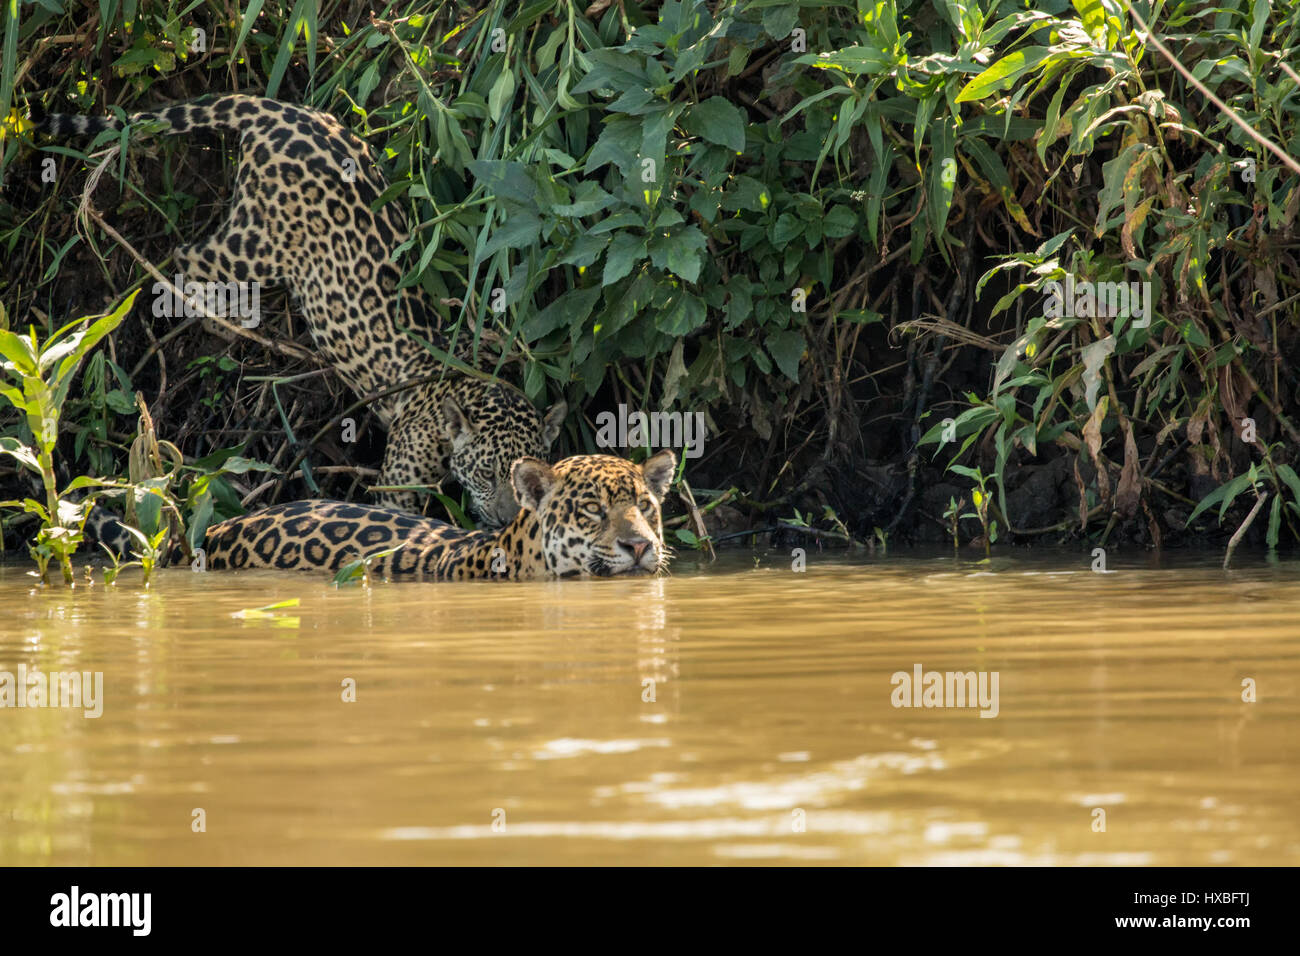 Weibliche Jaguar Schwimmen im Fluss Cuiaba trat durch eines ihrer jungen Jaguare, will man einen Drink in der Pantanal Mato Orduspor in Brasilien, Süd A Stockfoto